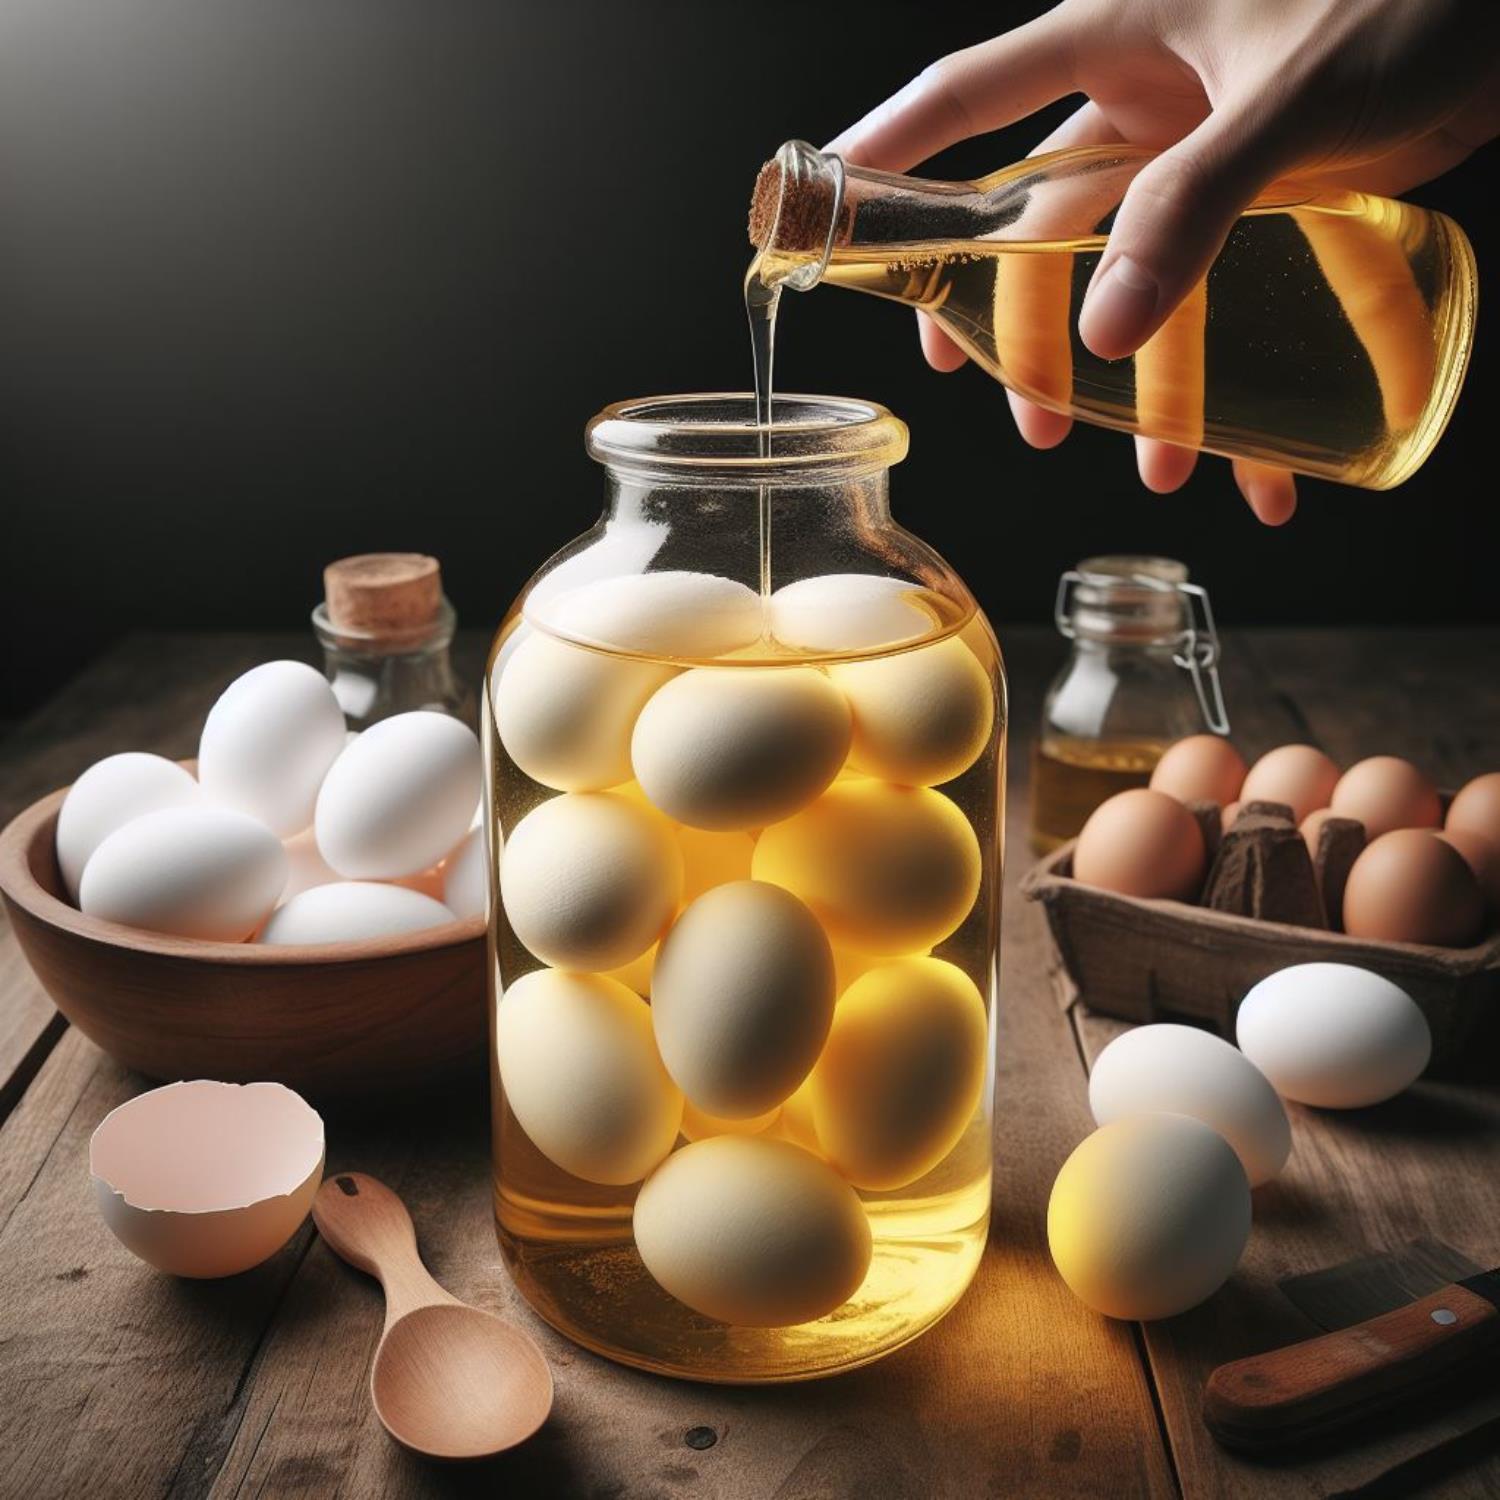 自製醋蛋,醋蛋做法,醋蛋